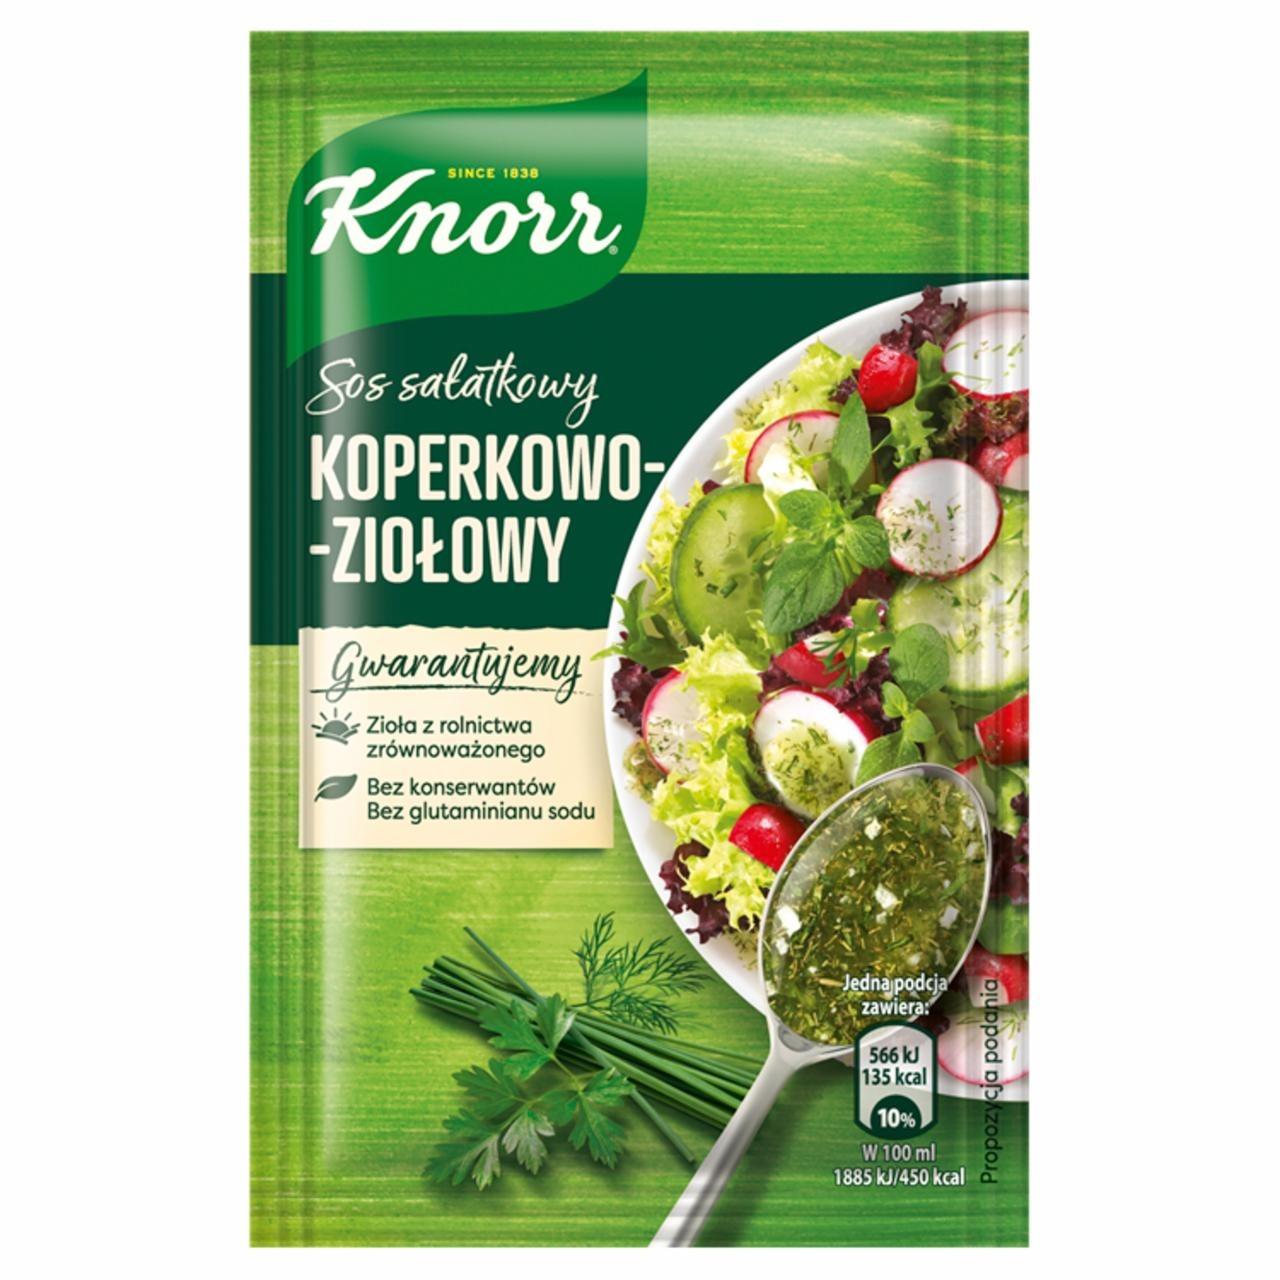 Фото - Sos sałatkowy koperkowo-ziołowy Knorr